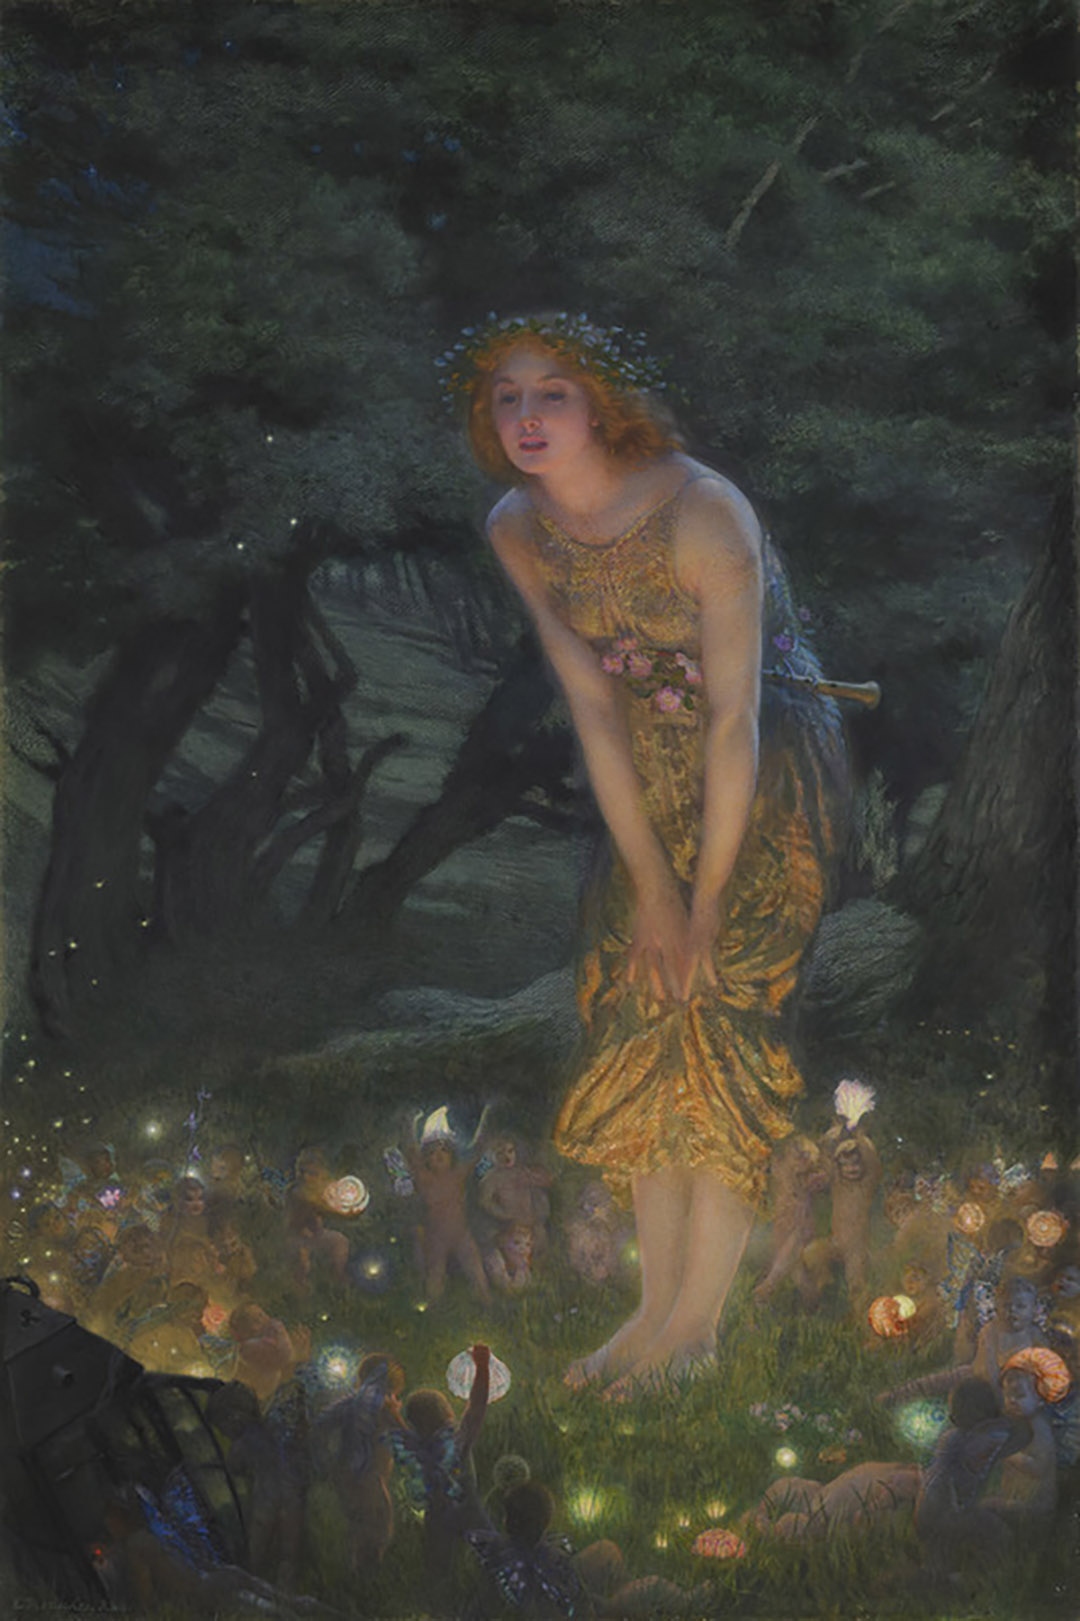 Tác phẩm “Midsummer Eve” (Đêm giữa mùa hè) của họa sĩ Edward Robert Hughes, năm 1851–1914. Tranh màu nước với màu gouache; kích thước: 45 inch x 30 inch. (Ảnh: Tài liệu công cộng)